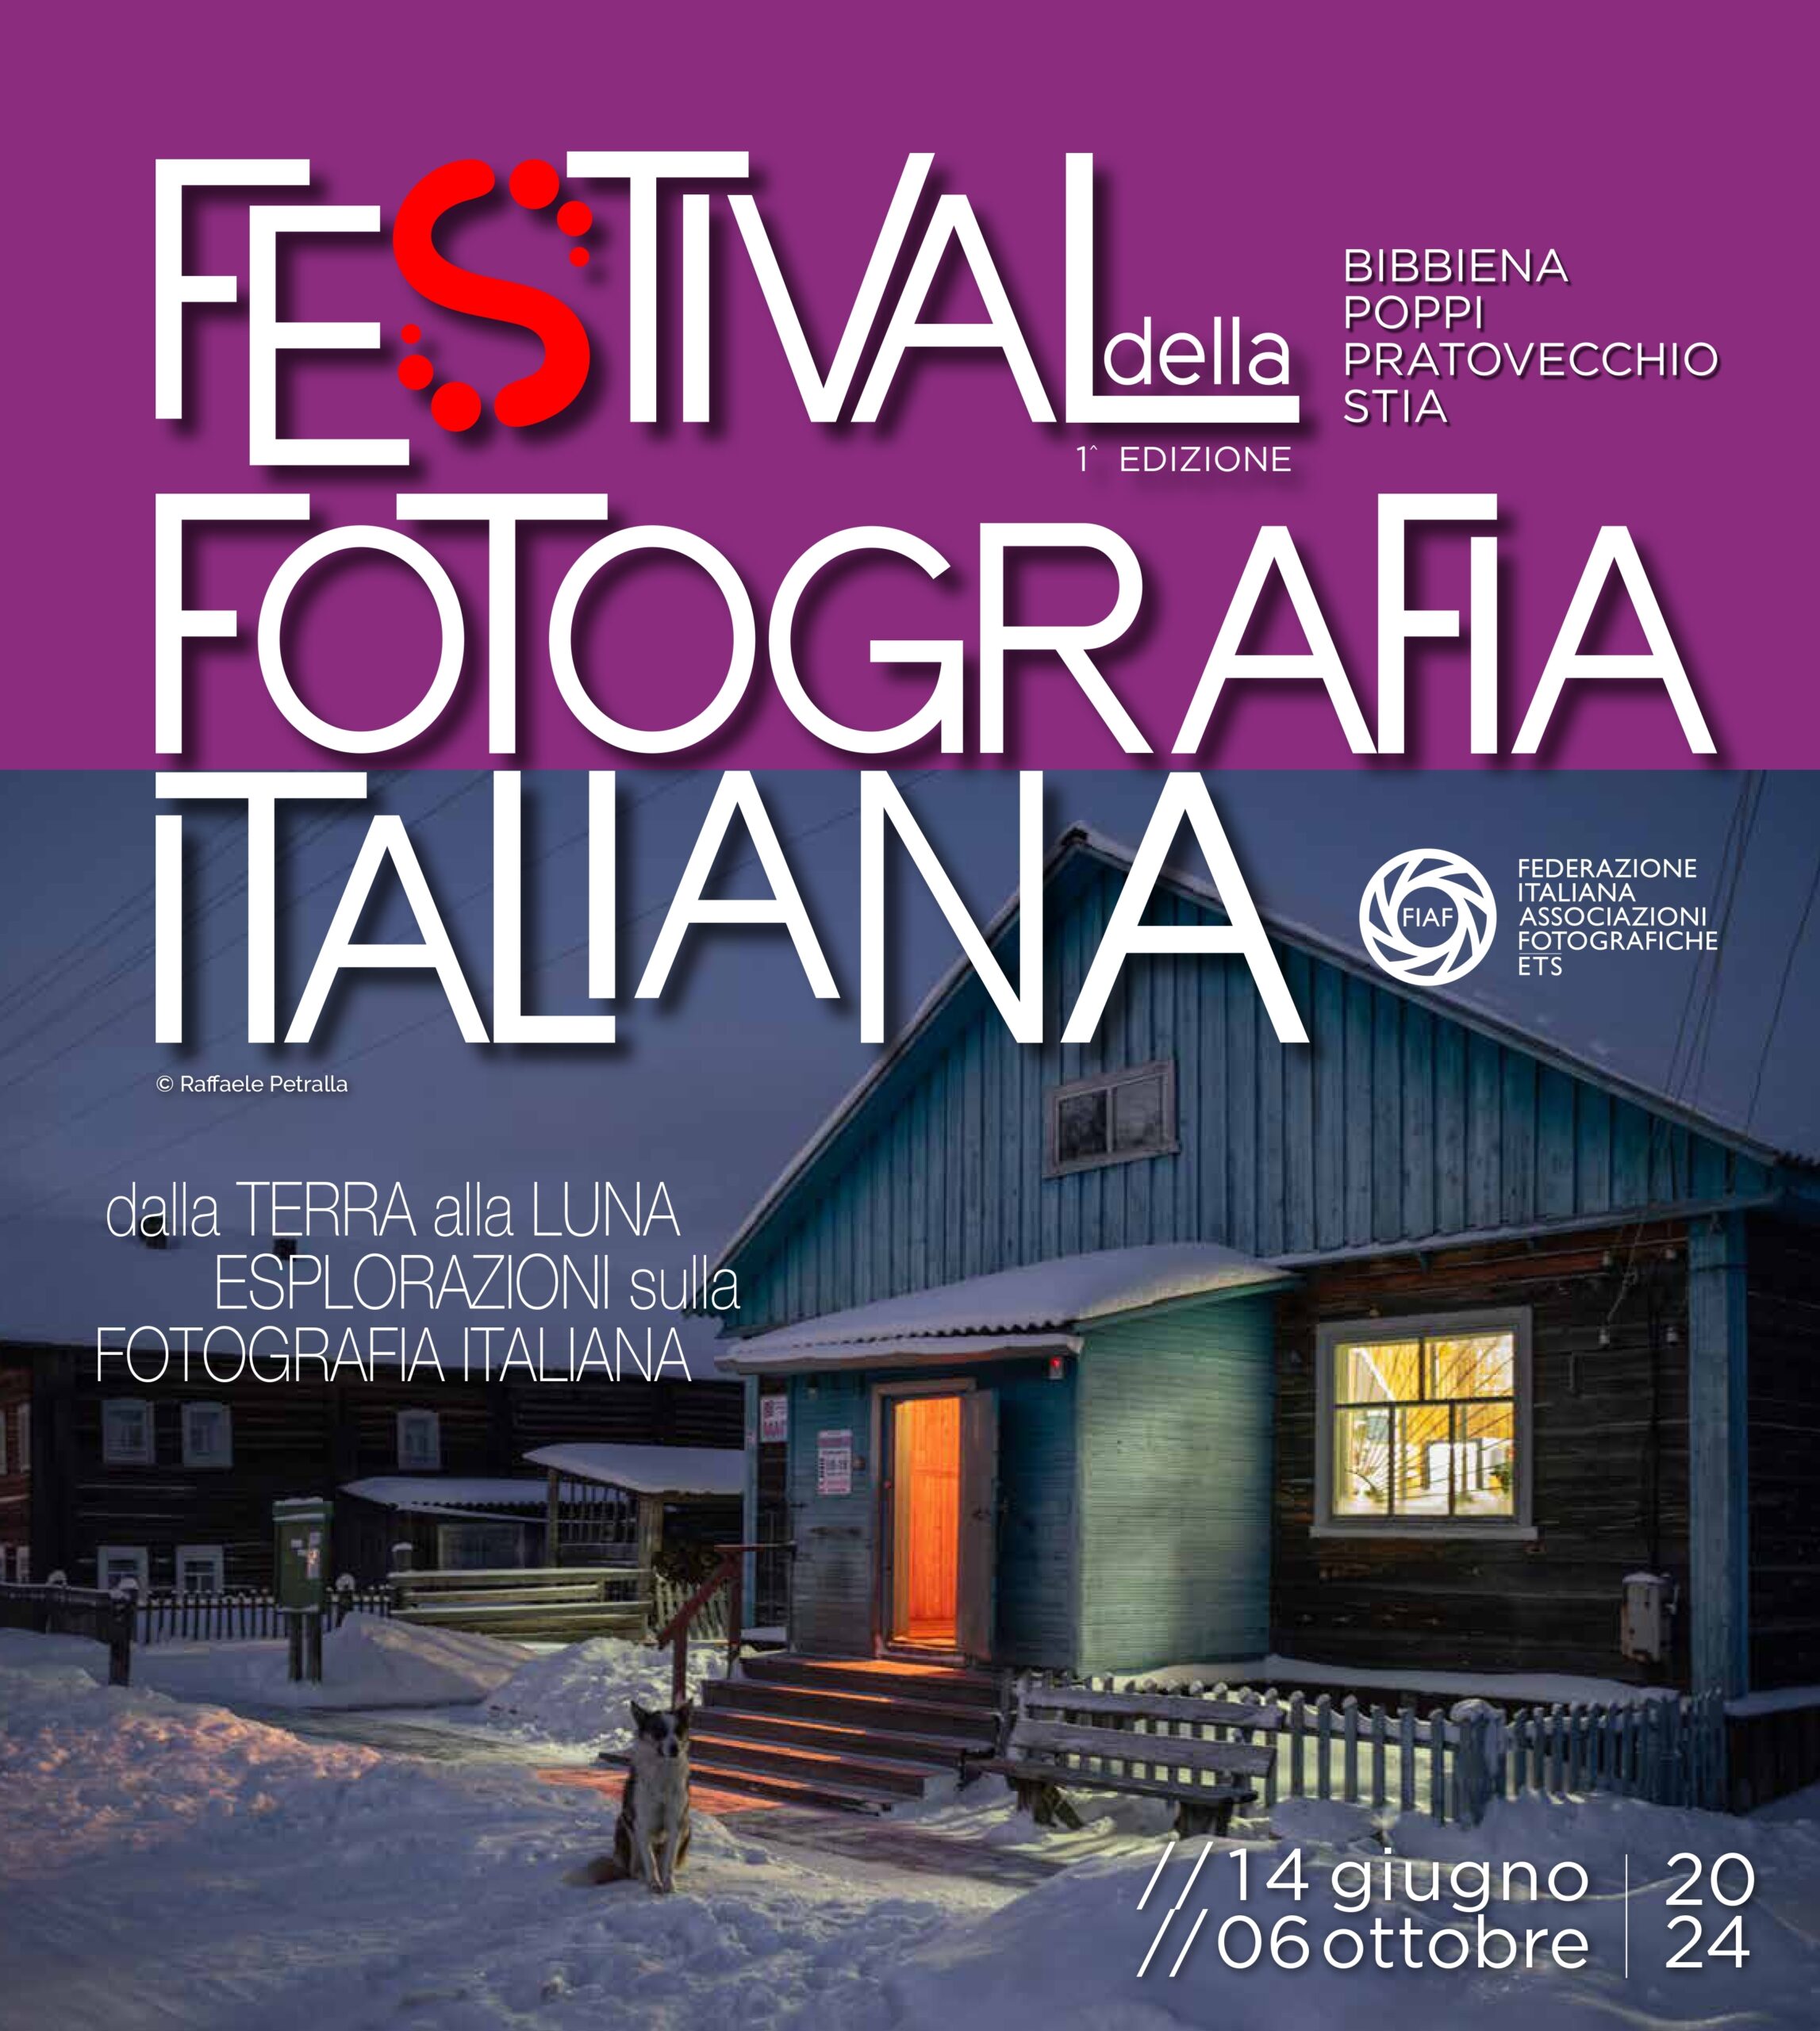 Cosmodrome exhibited at Festival della Fotografia Italiana